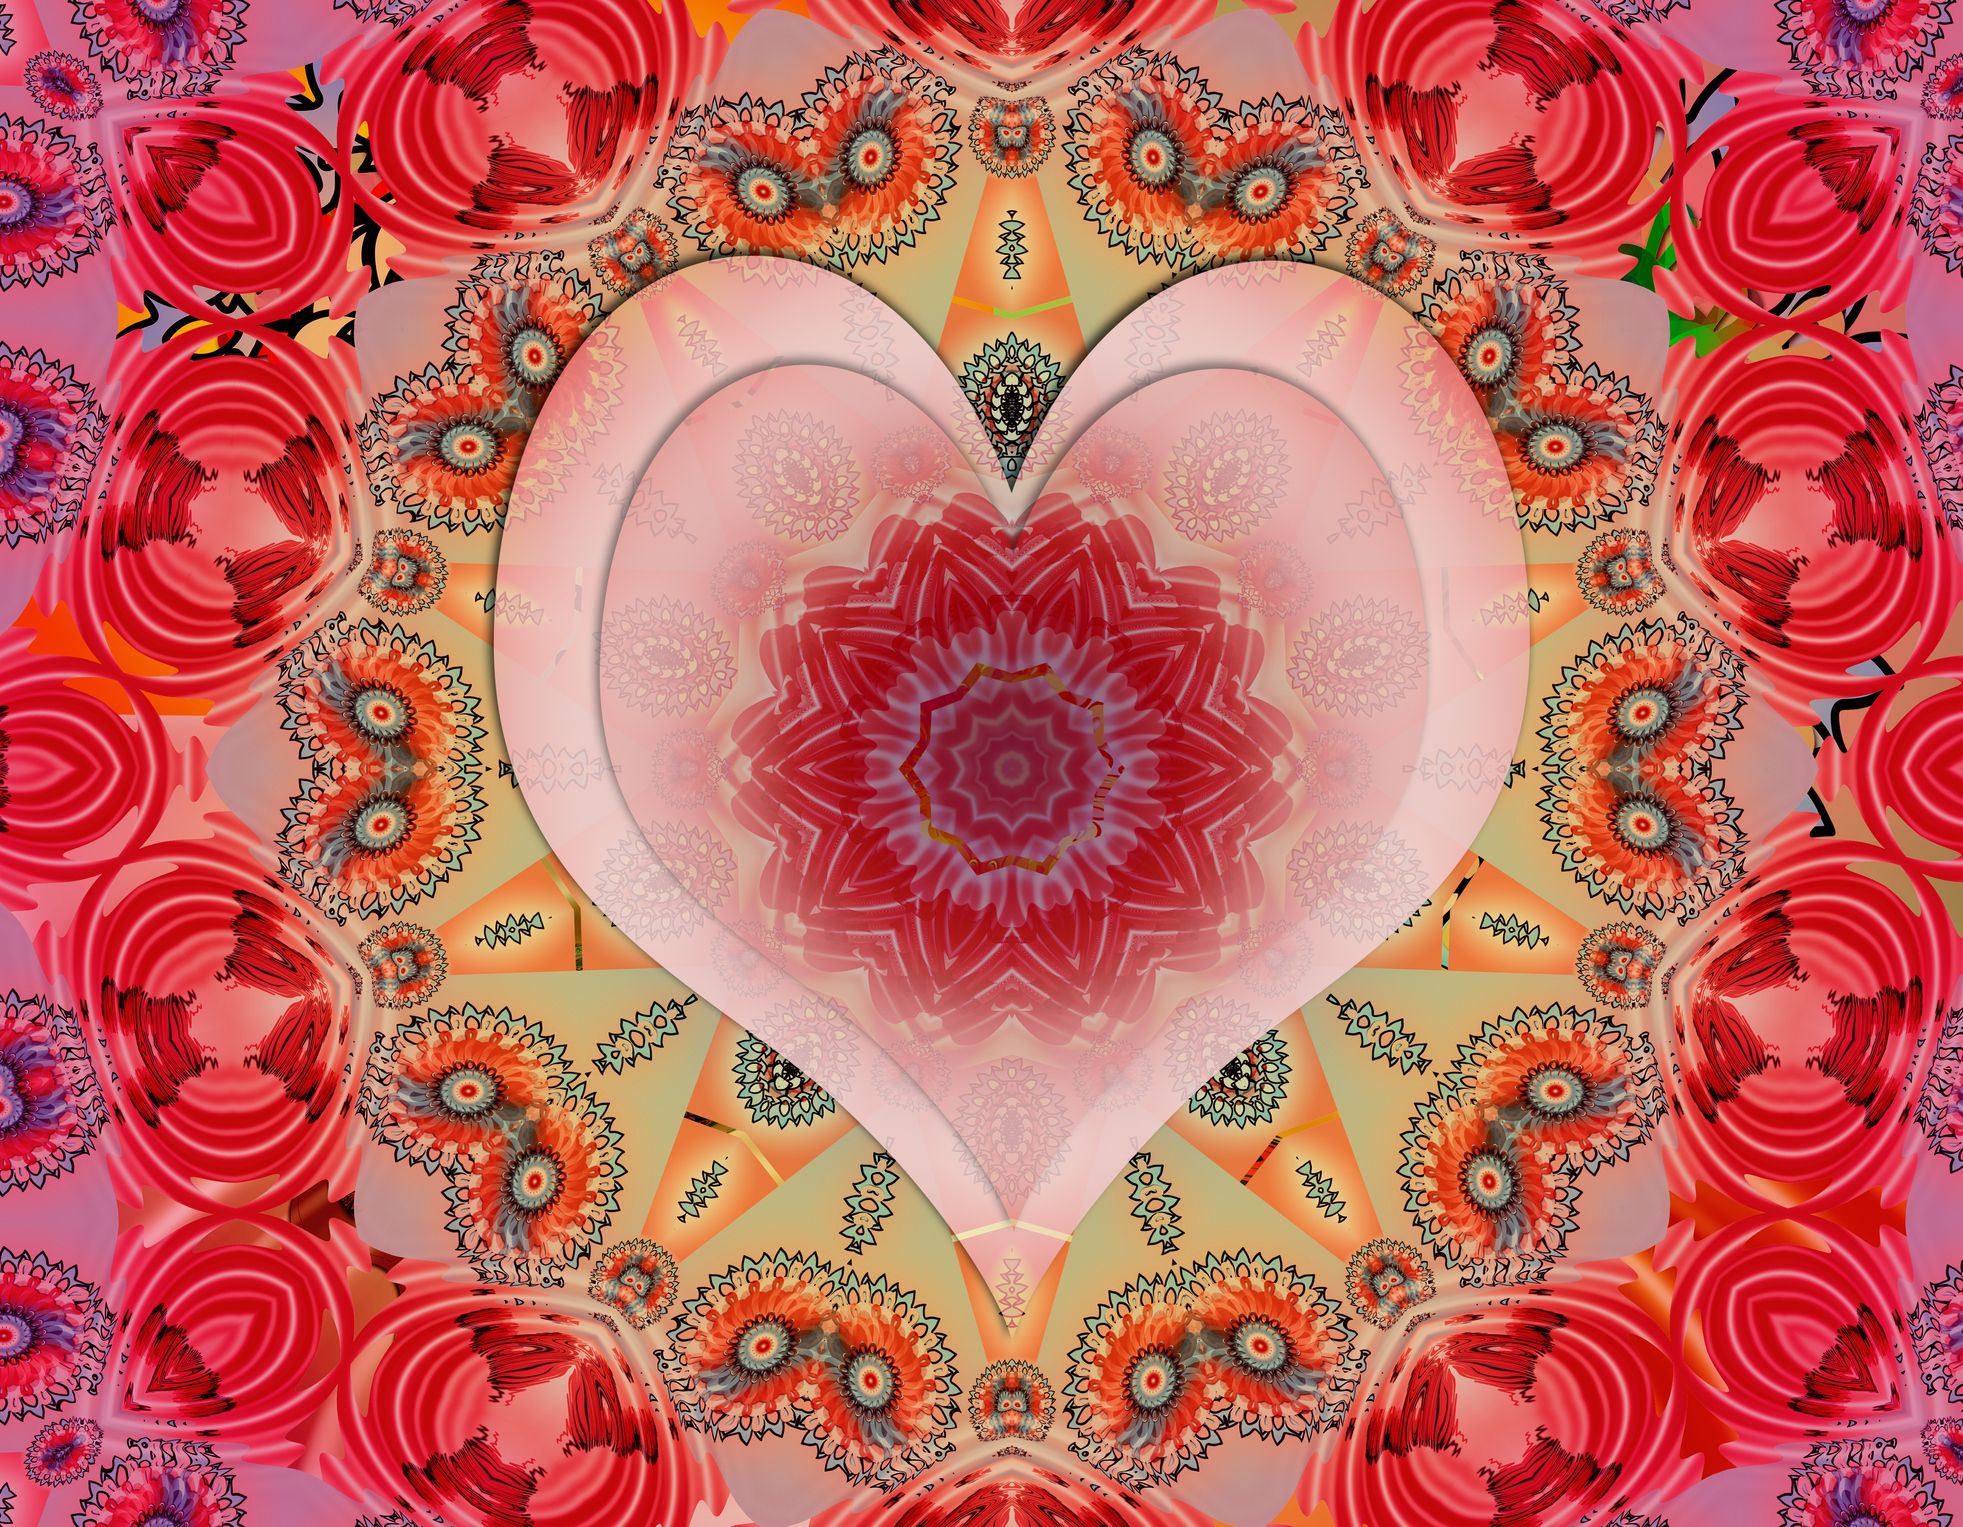 Heart, Pattern, Pink, Red, Design, Organ, Visual arts, Love, Heart, Illustration, 